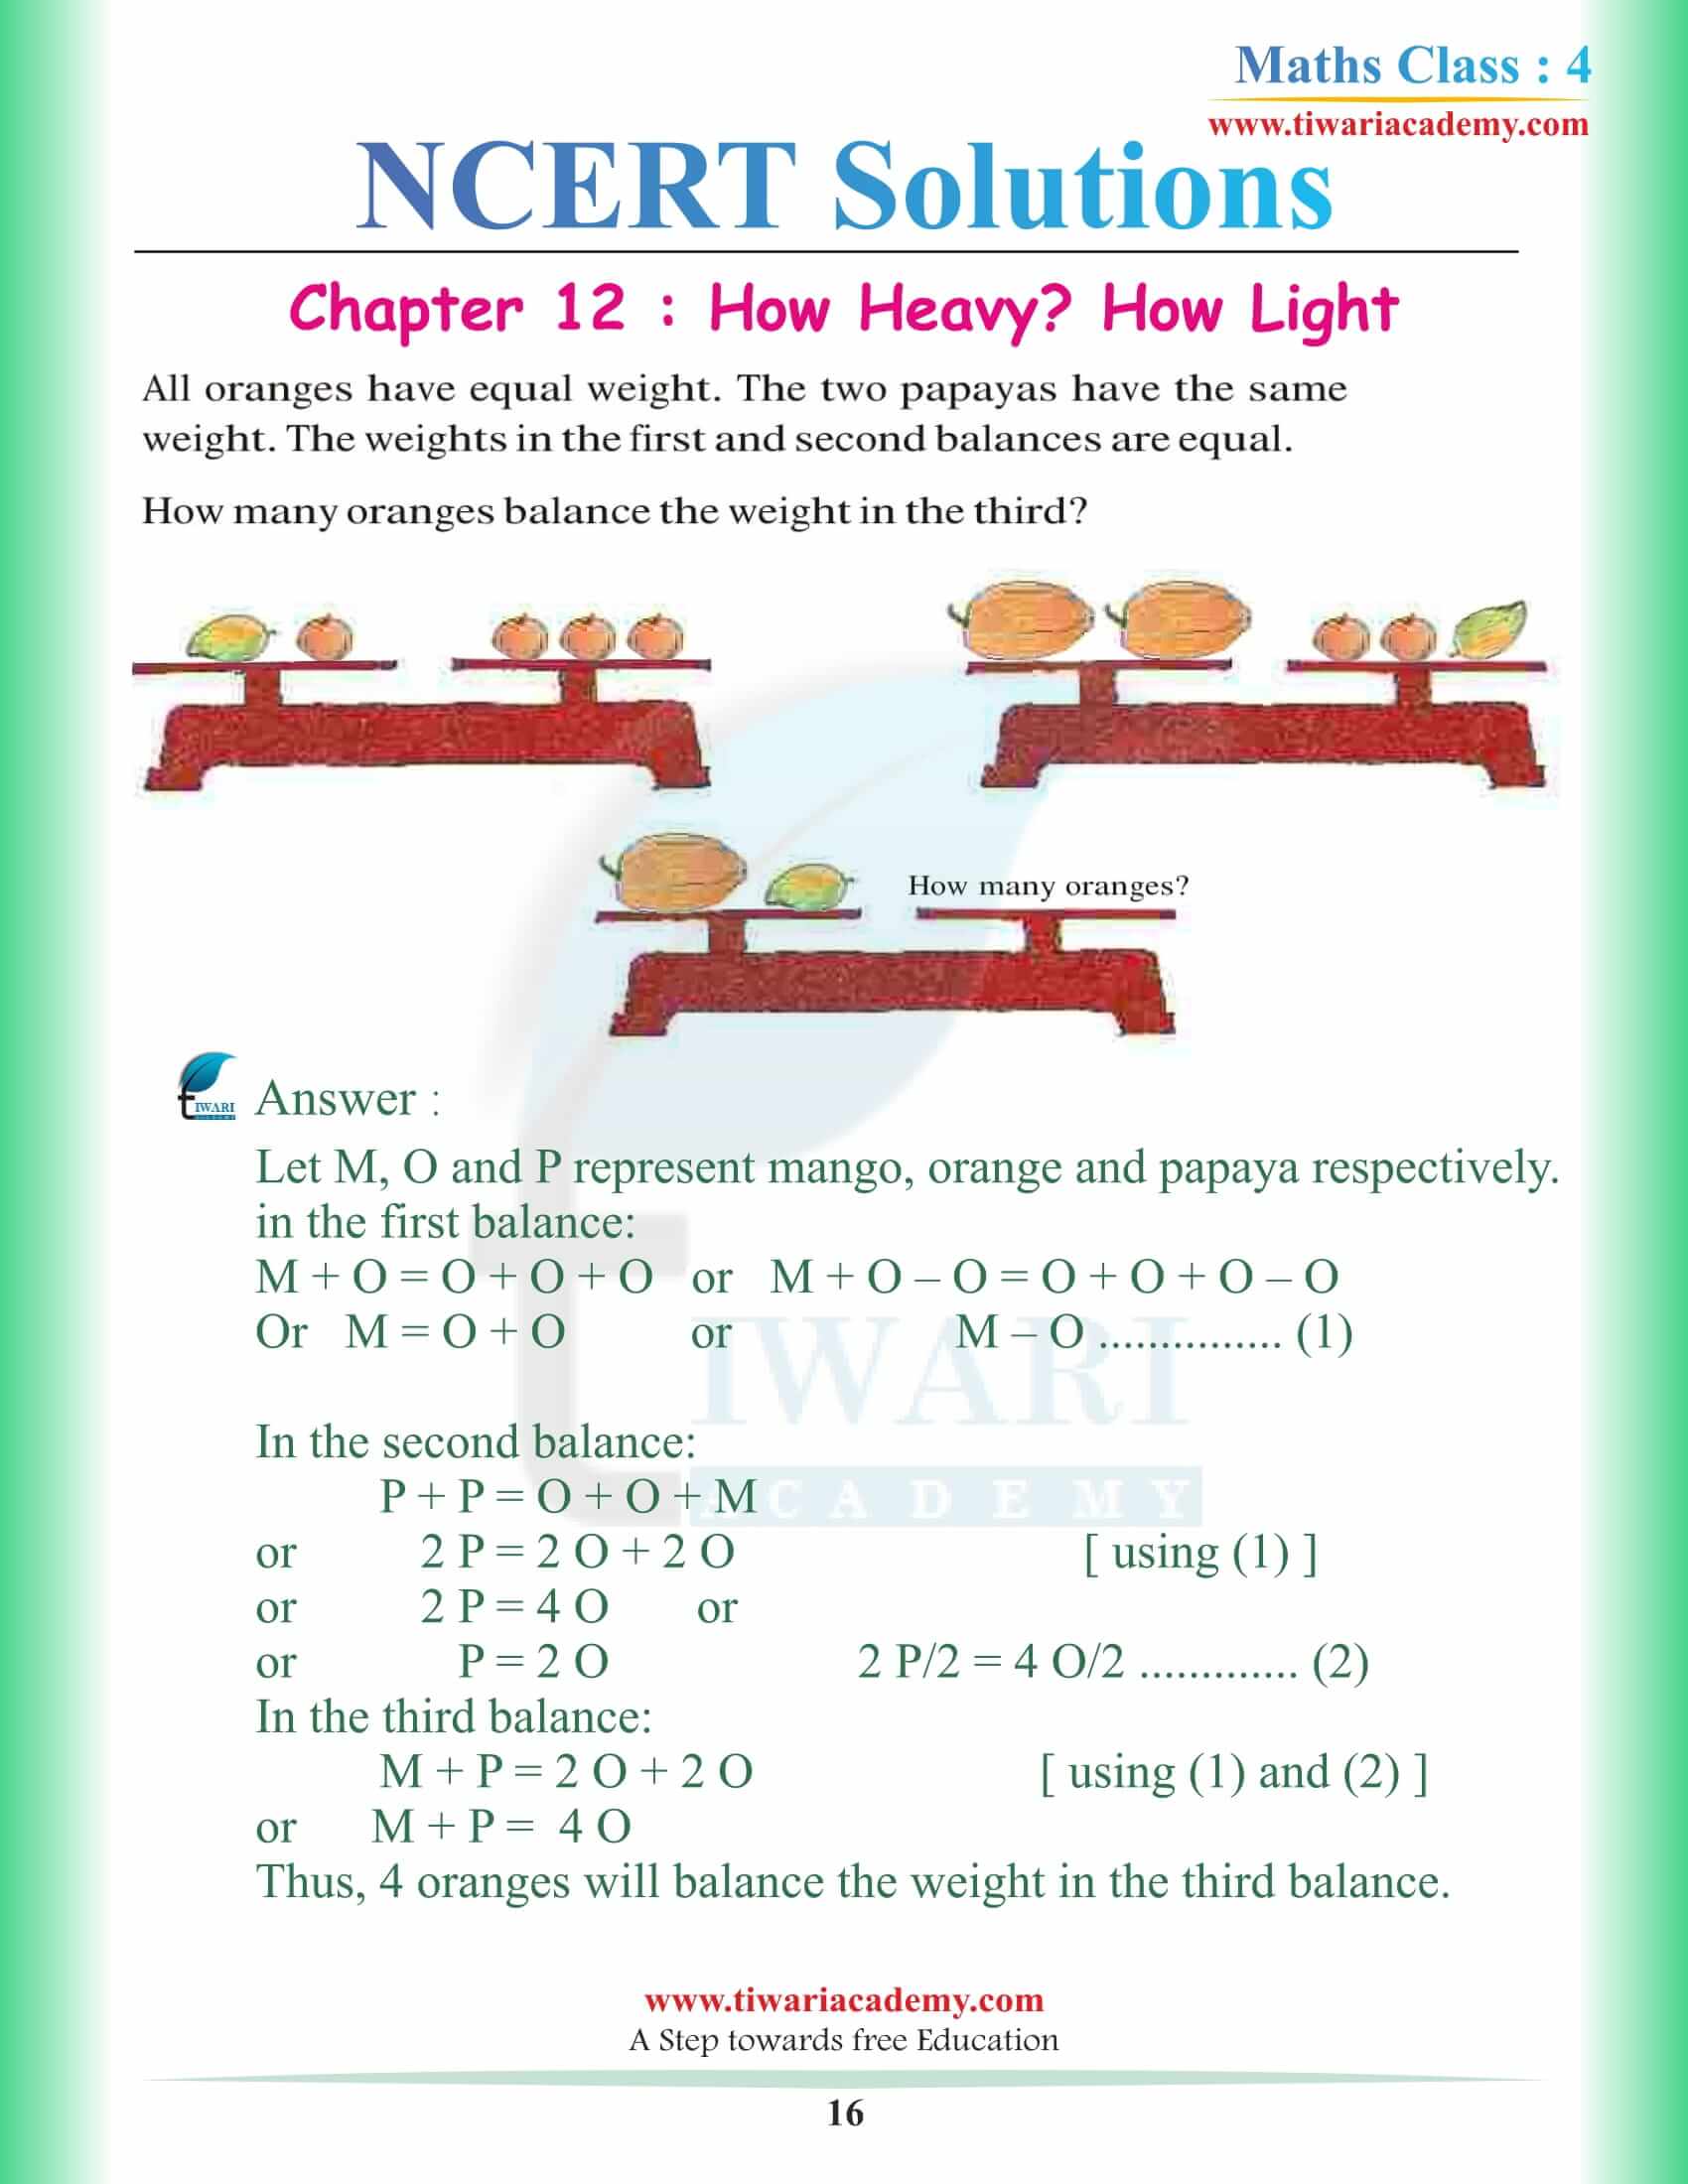 Class 4 Maths NCERT Chapter 12 Solutions updated